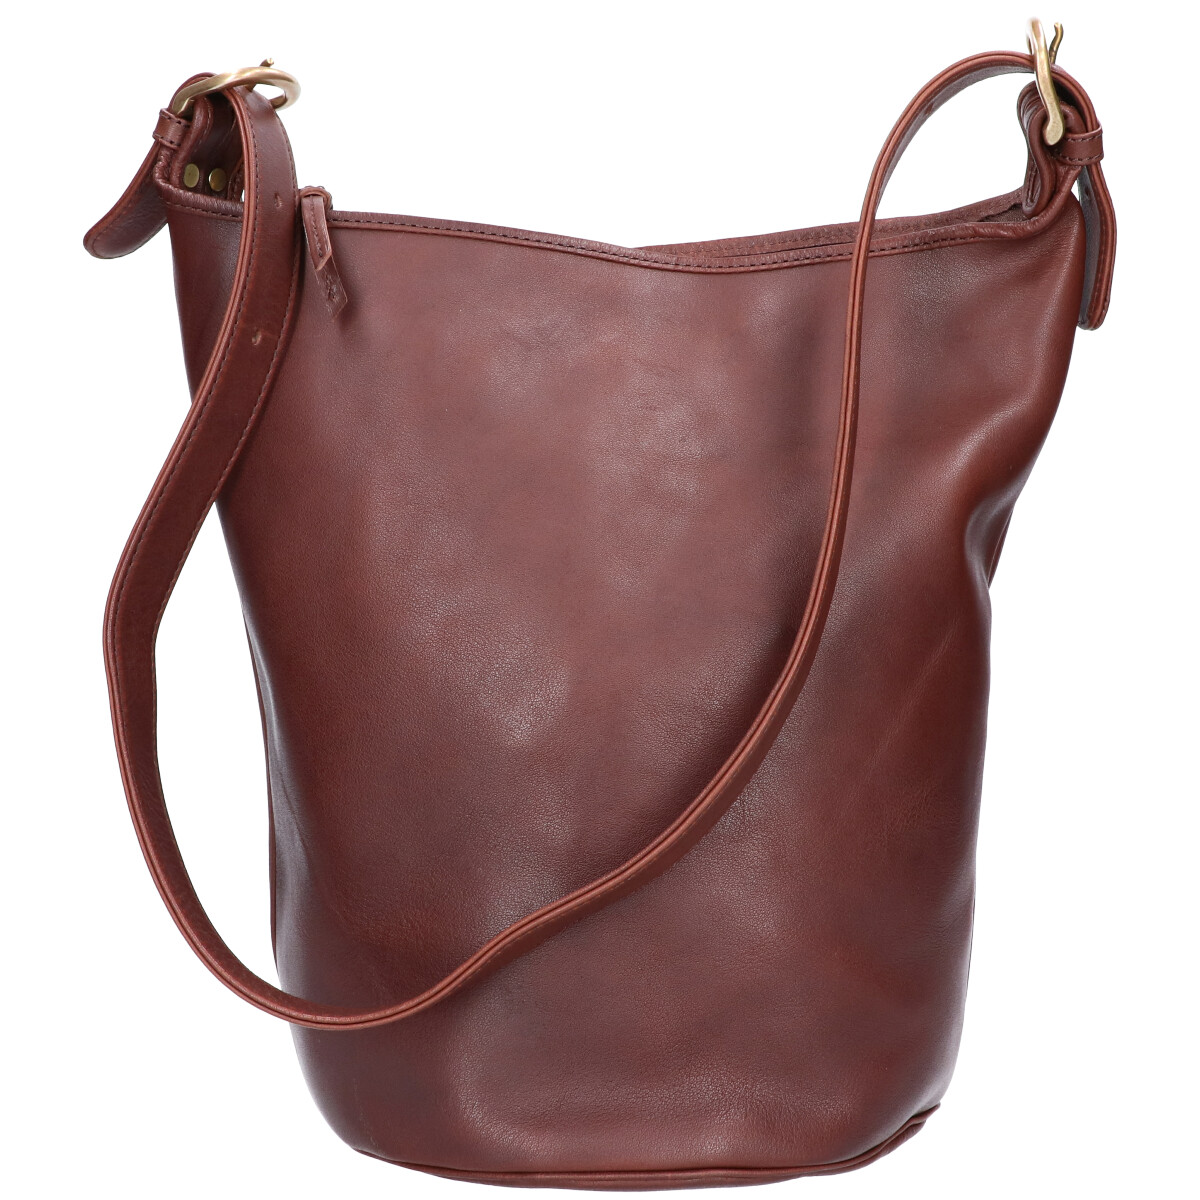 スロウの49S204I bono bucket shoulder bag ボーノ 栃木レザー バケツ型バッグの買取実績です。